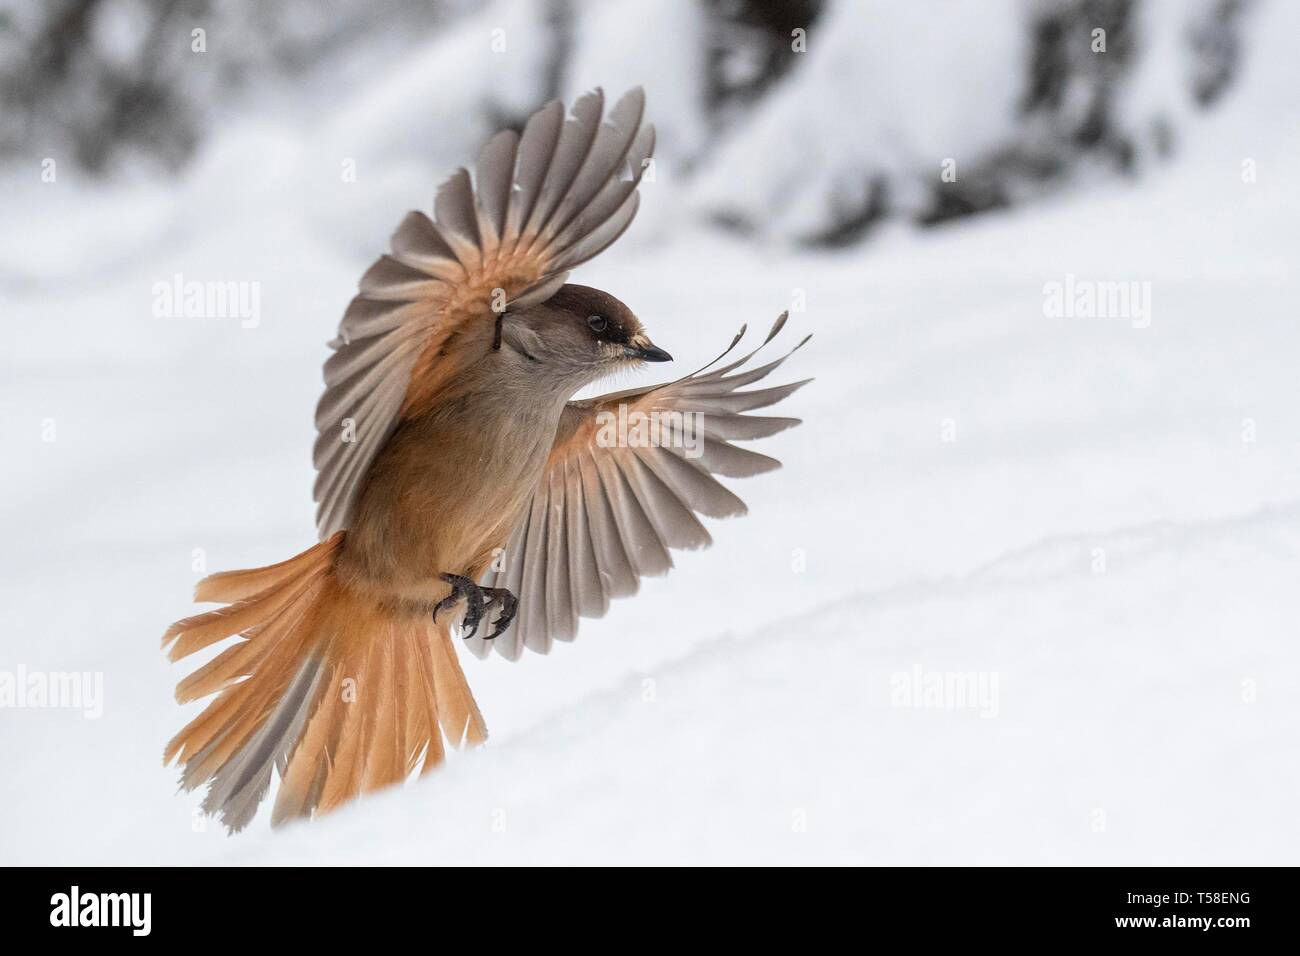 Siberian jay (Perisoreus infaustus) flying in the snow, Kuusamo, Finland Stock Photo